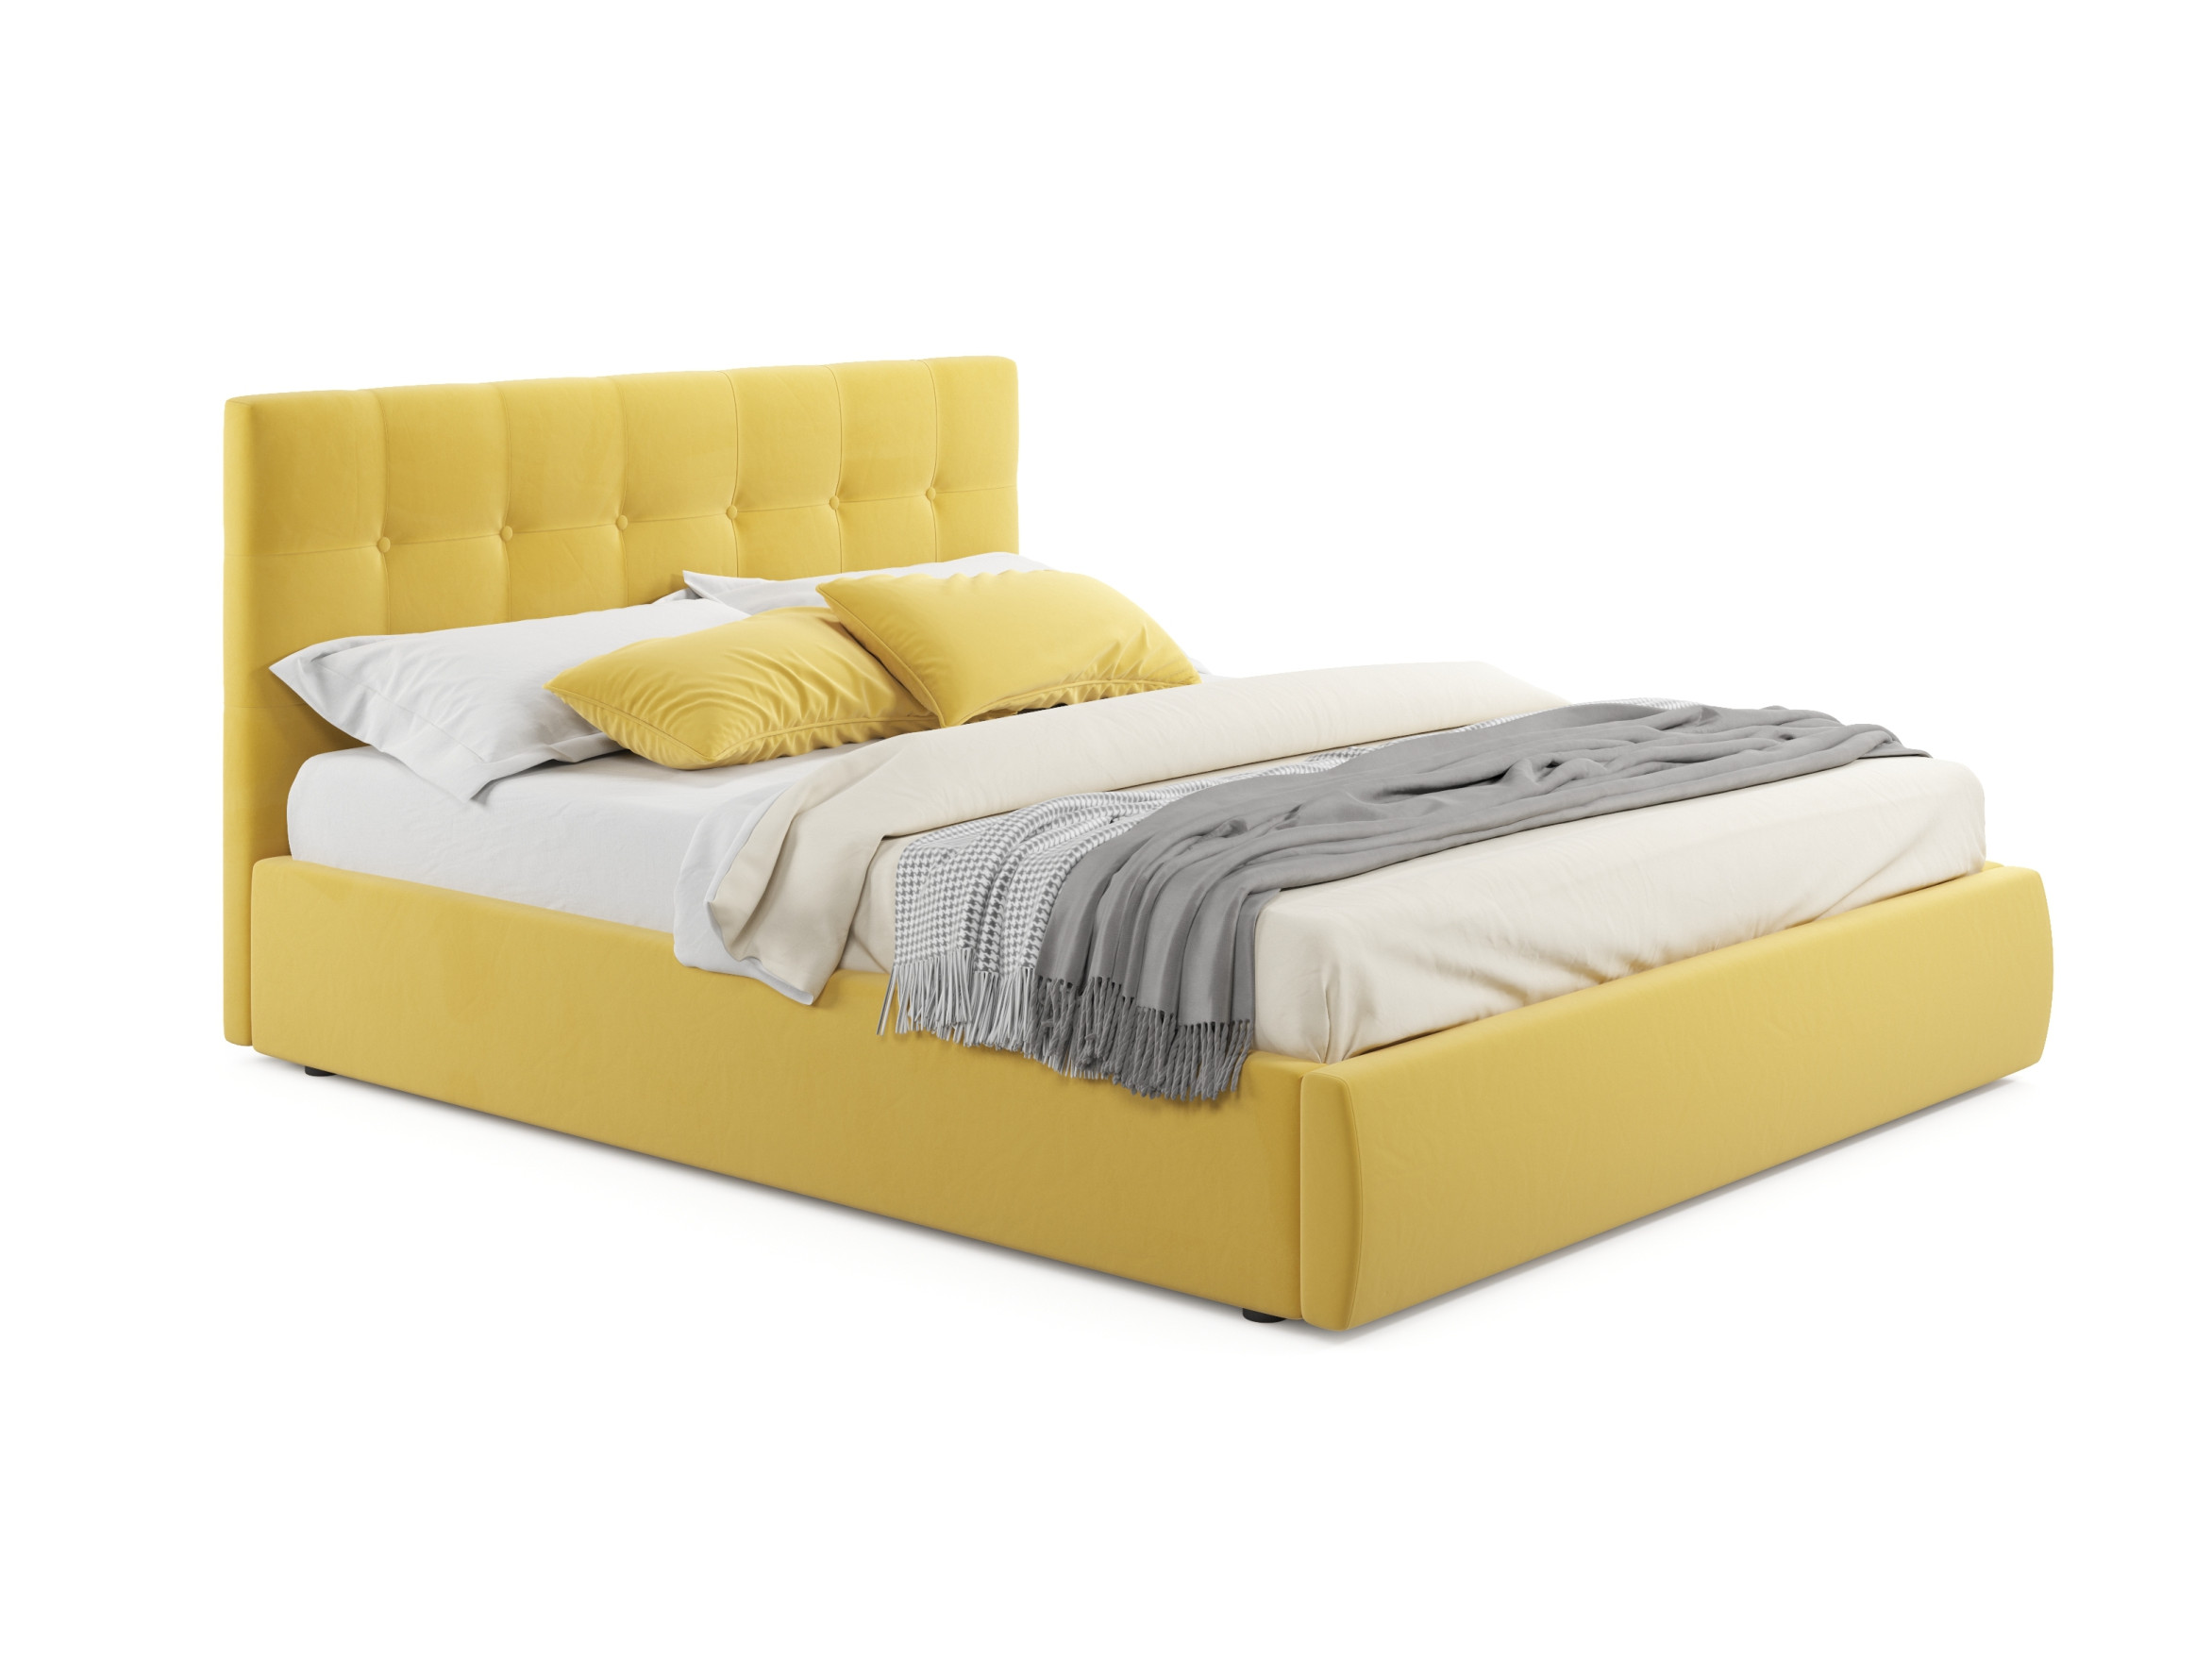 Мягкая кровать Selesta 1800 желтая с матрасом PROMO B COCOS с под мягкая кровать milena 900 желтая с подъемным механизмом и матрасом promo b cocos желтый желтый велюр дсп